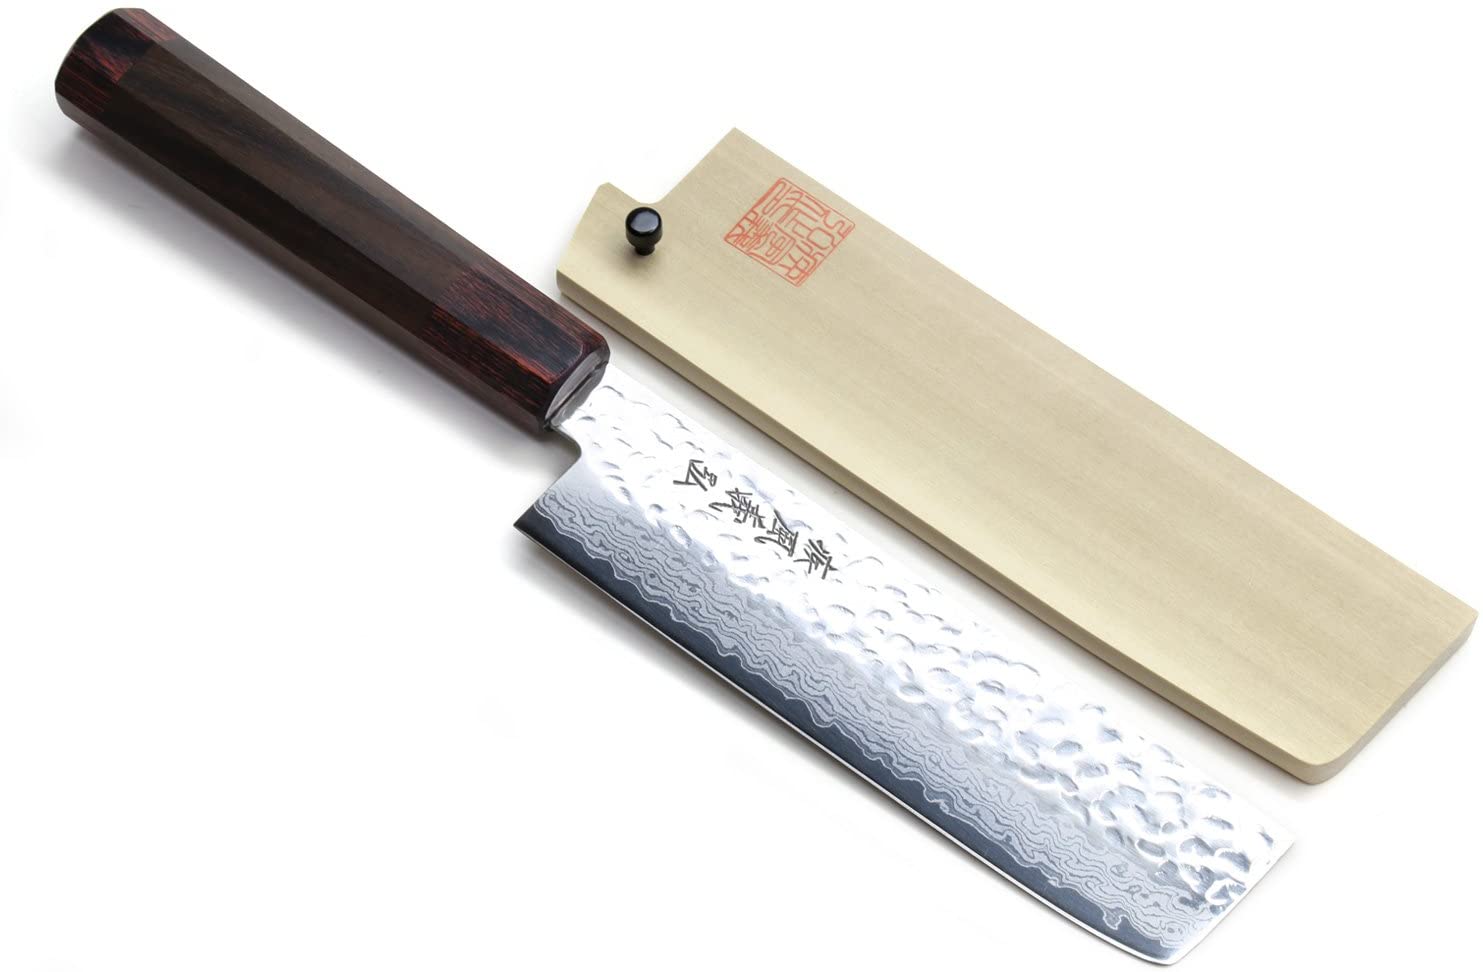 Bästa usuba fyrkantskniv för kockar- Yoshihiro NSW 46 lager